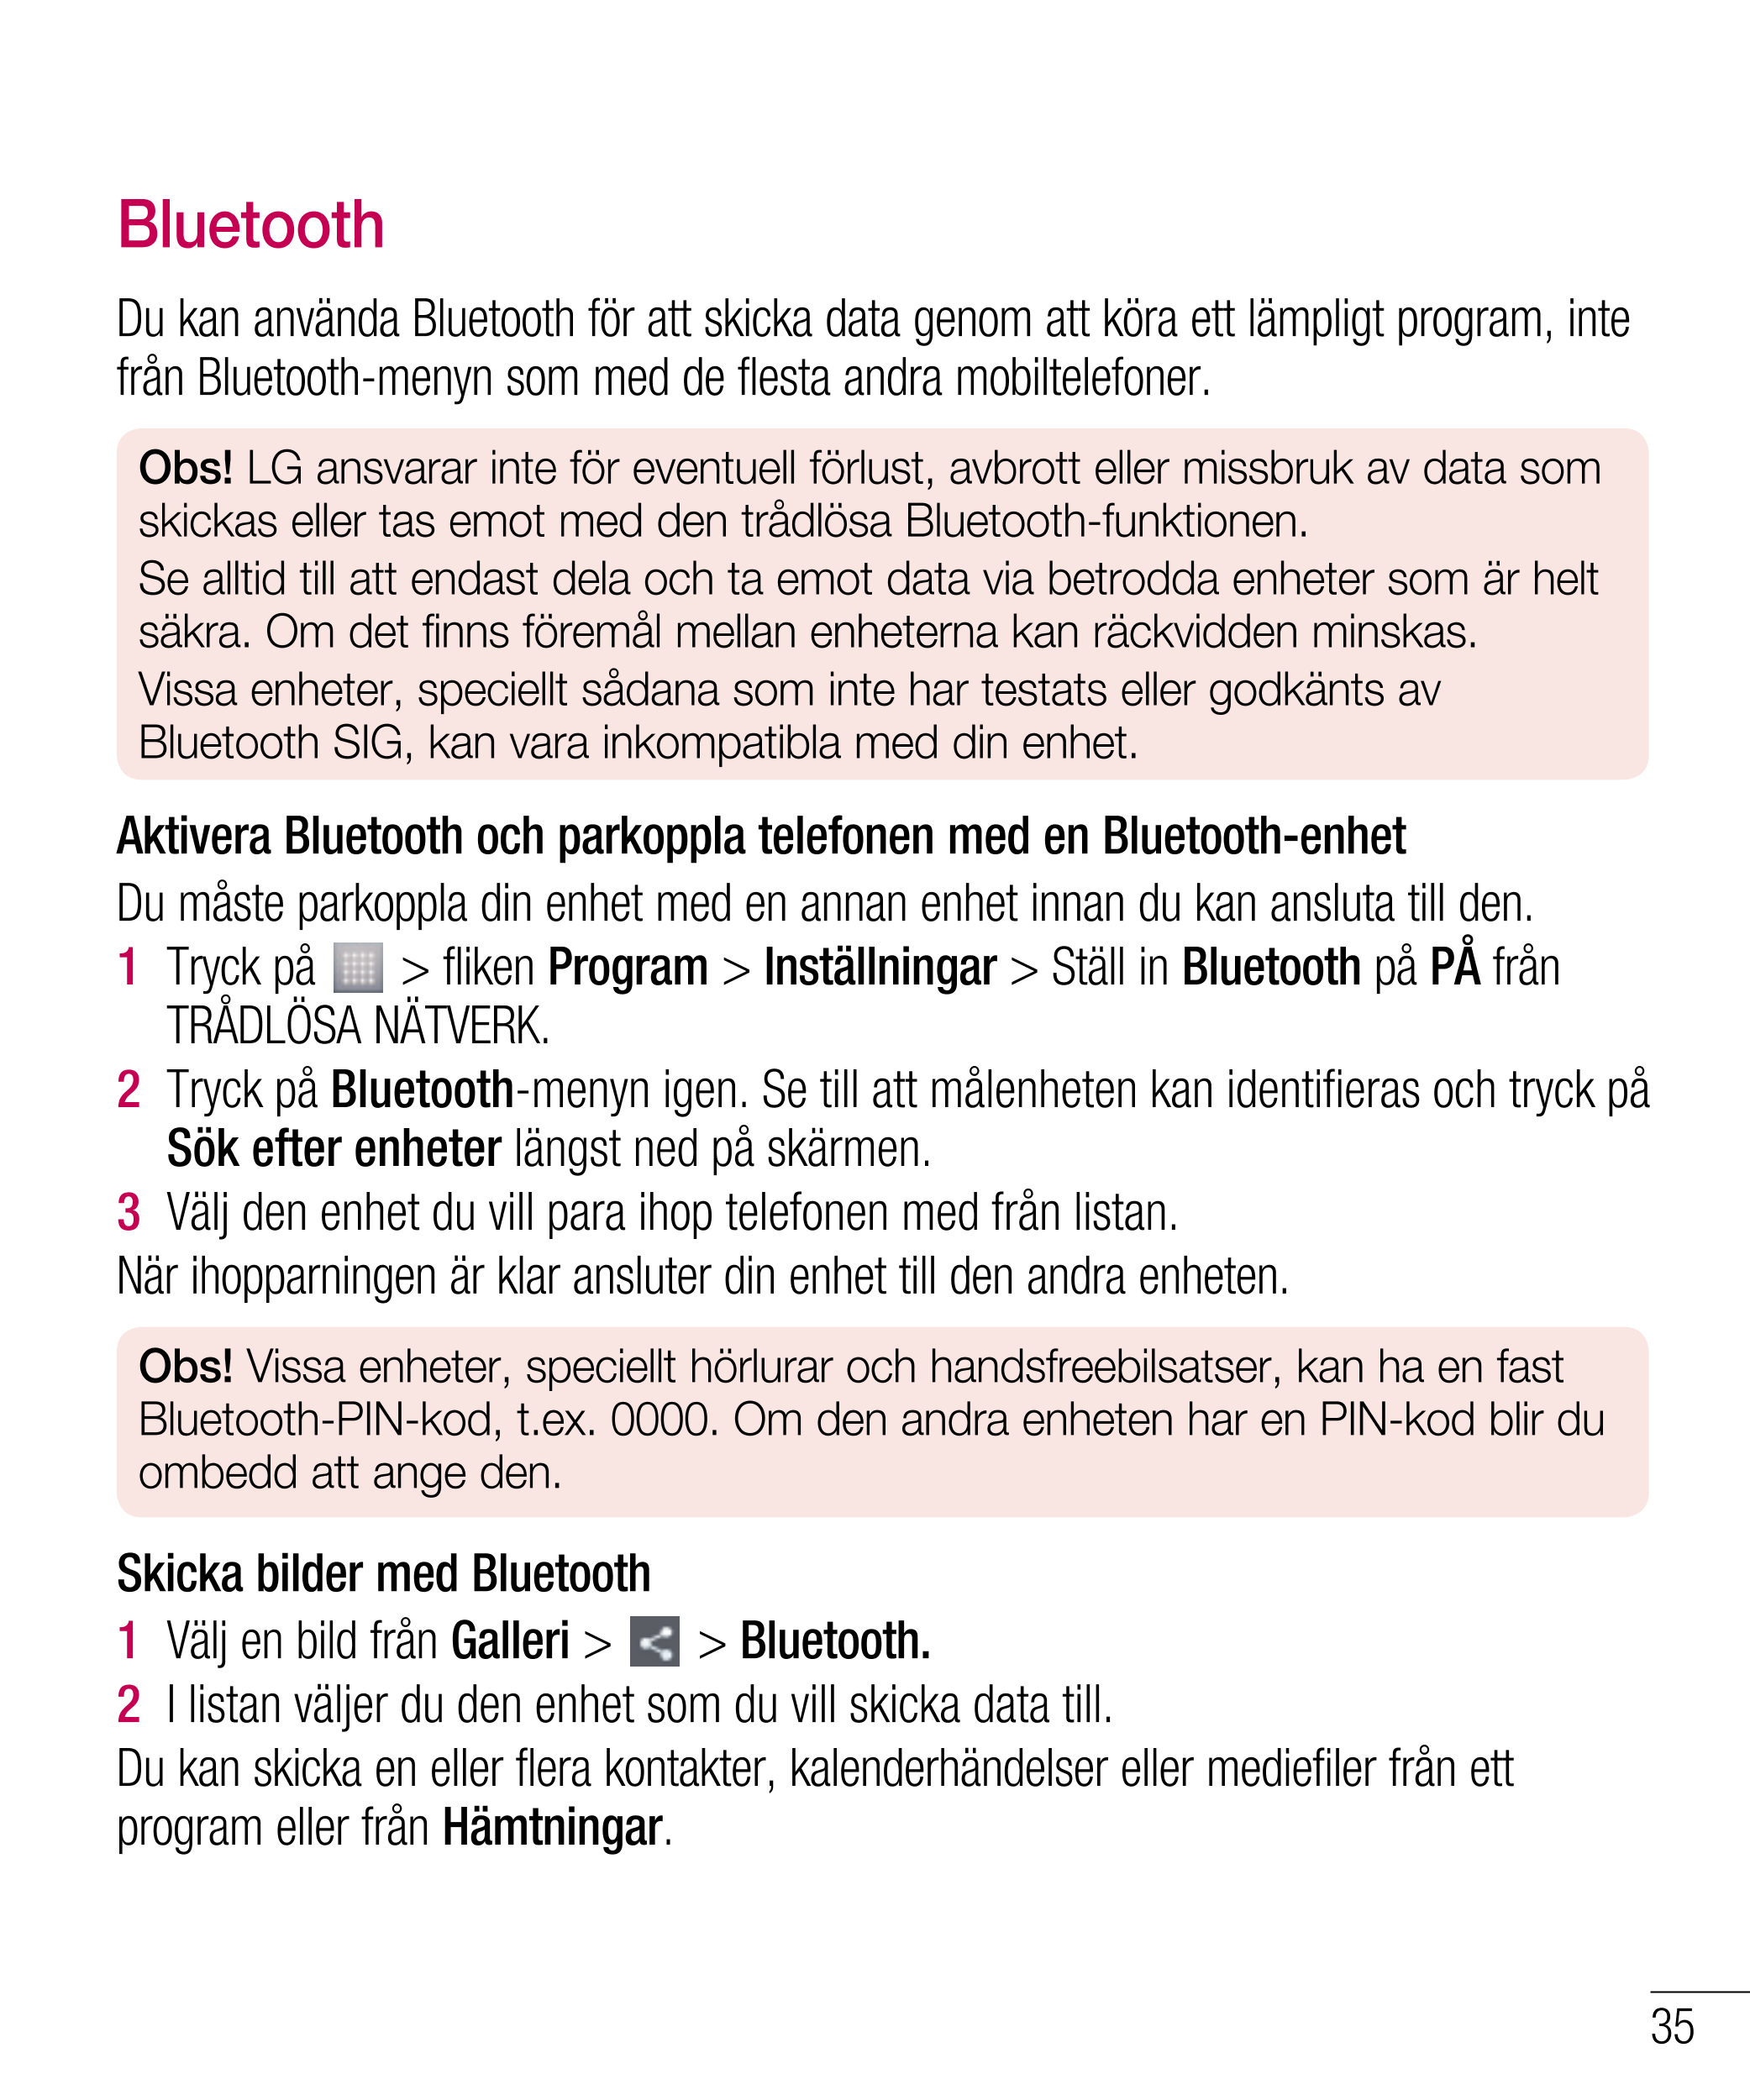 Bluetooth
Du kan använda Bluetooth för att skicka data genom att köra ett lämpligt program, inte 
från Bluetooth-menyn som med d